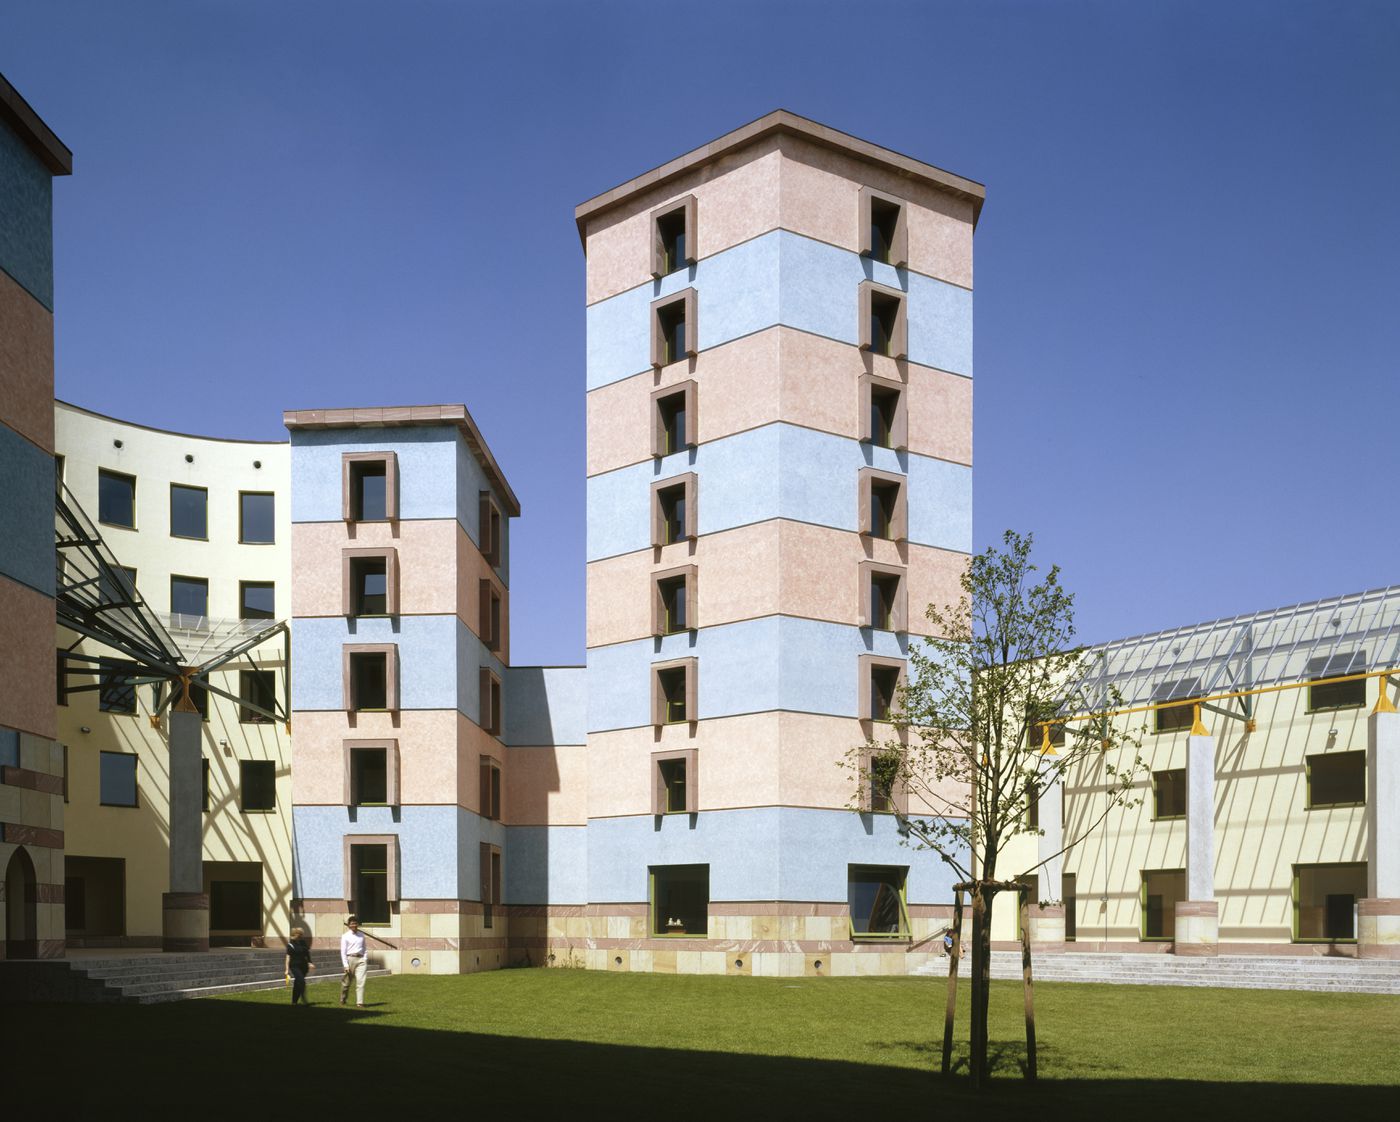 Wissenschaftszentrum, Berlin, Germany: exterior view